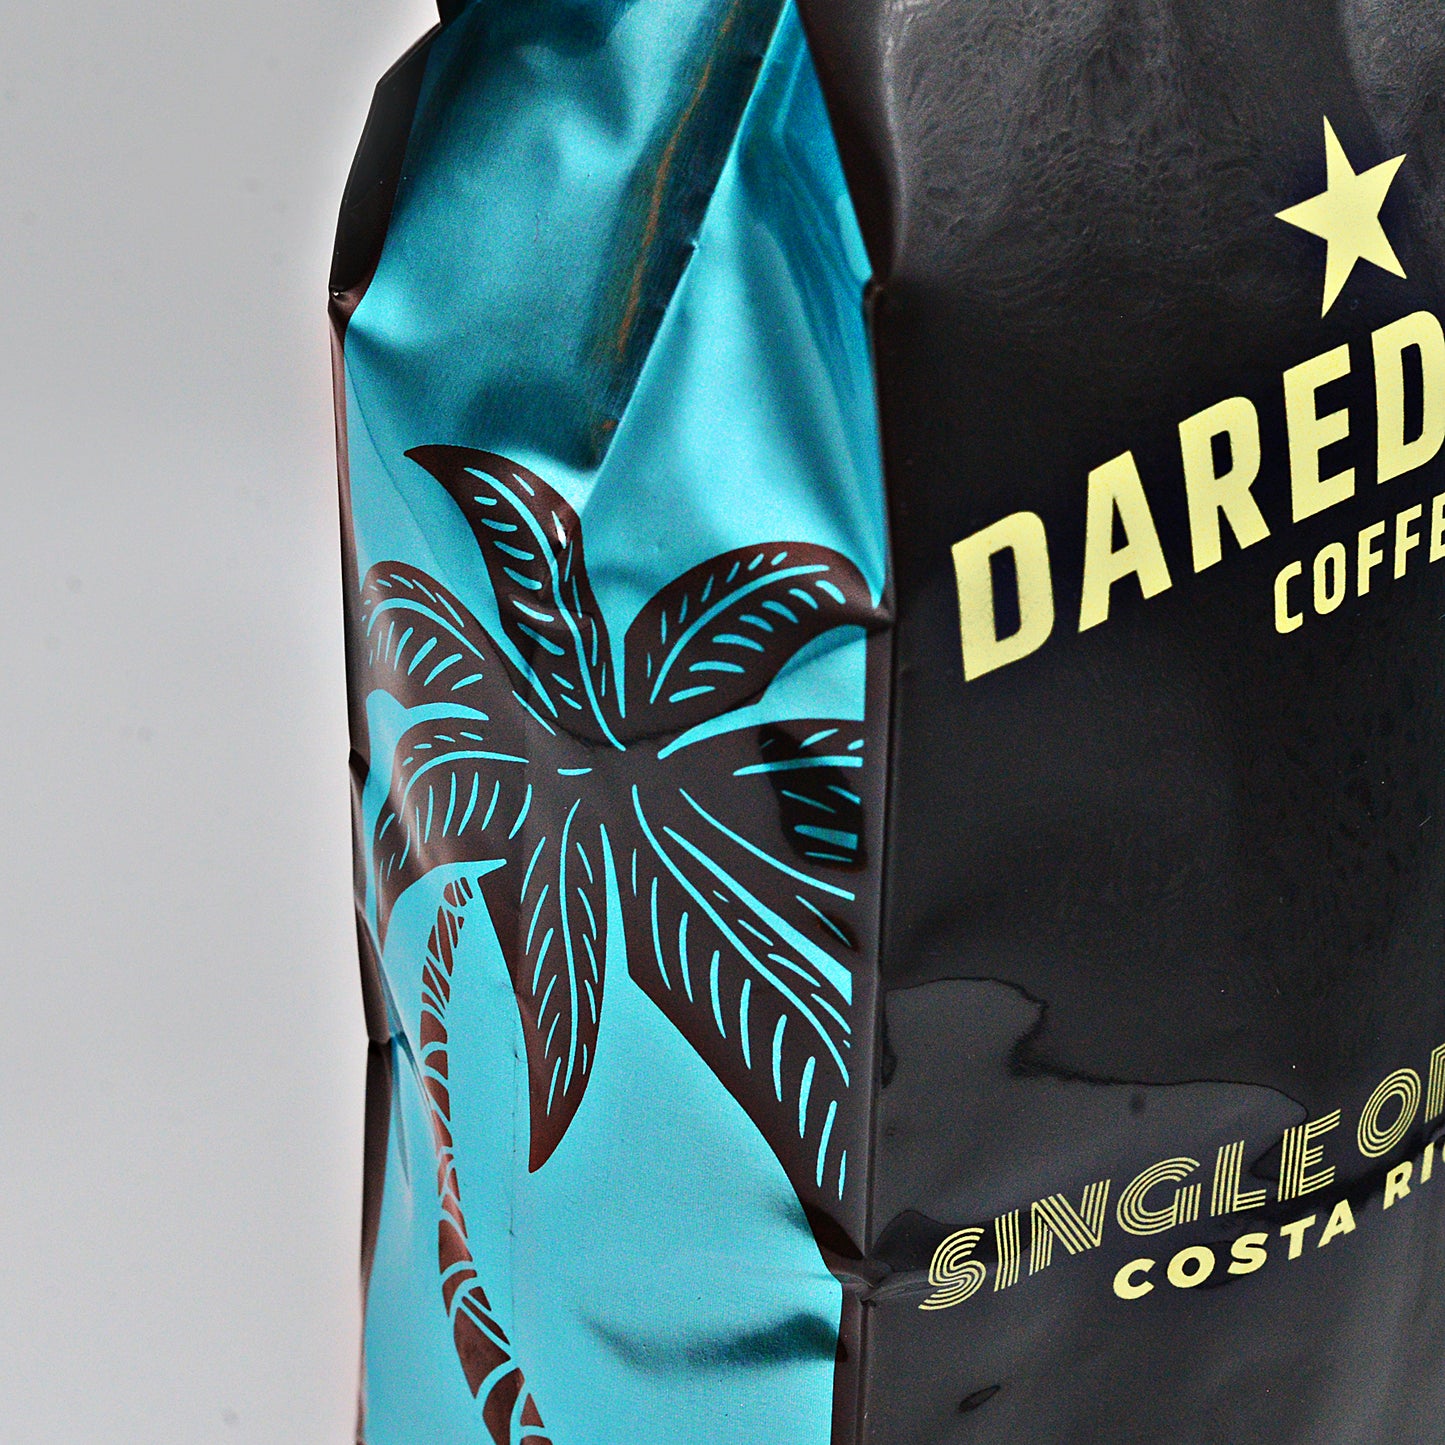 Daredevil Coffee - Single Origin: Costa Rica